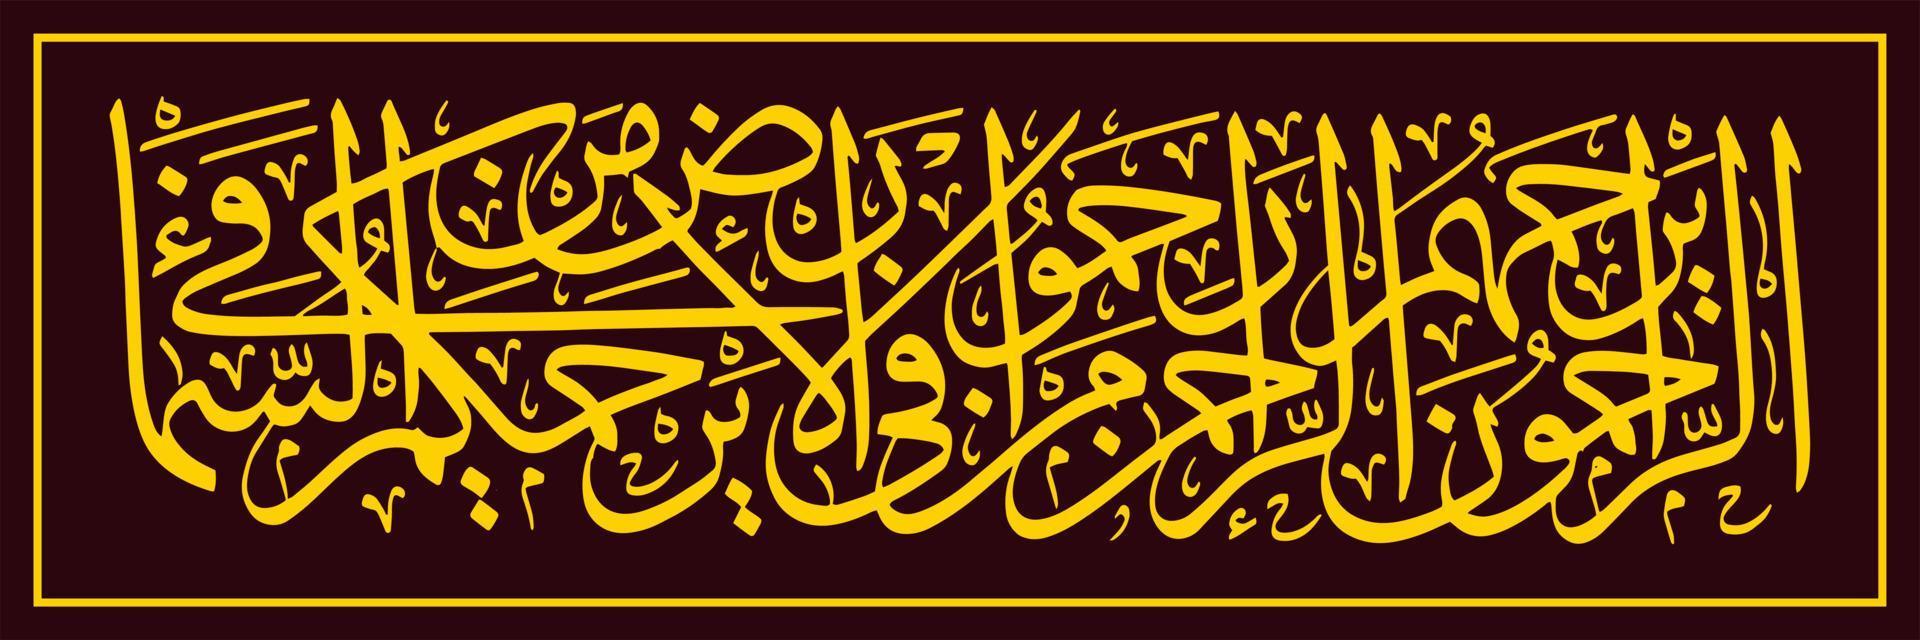 Arabo calligrafia, traduzione quelli chi siamo misericordioso, volontà essere amato di Allah, il rahman. dunque, amore tutti creature su terra, certamente tutti creature nel il cielo volontà amore voi tutti vettore